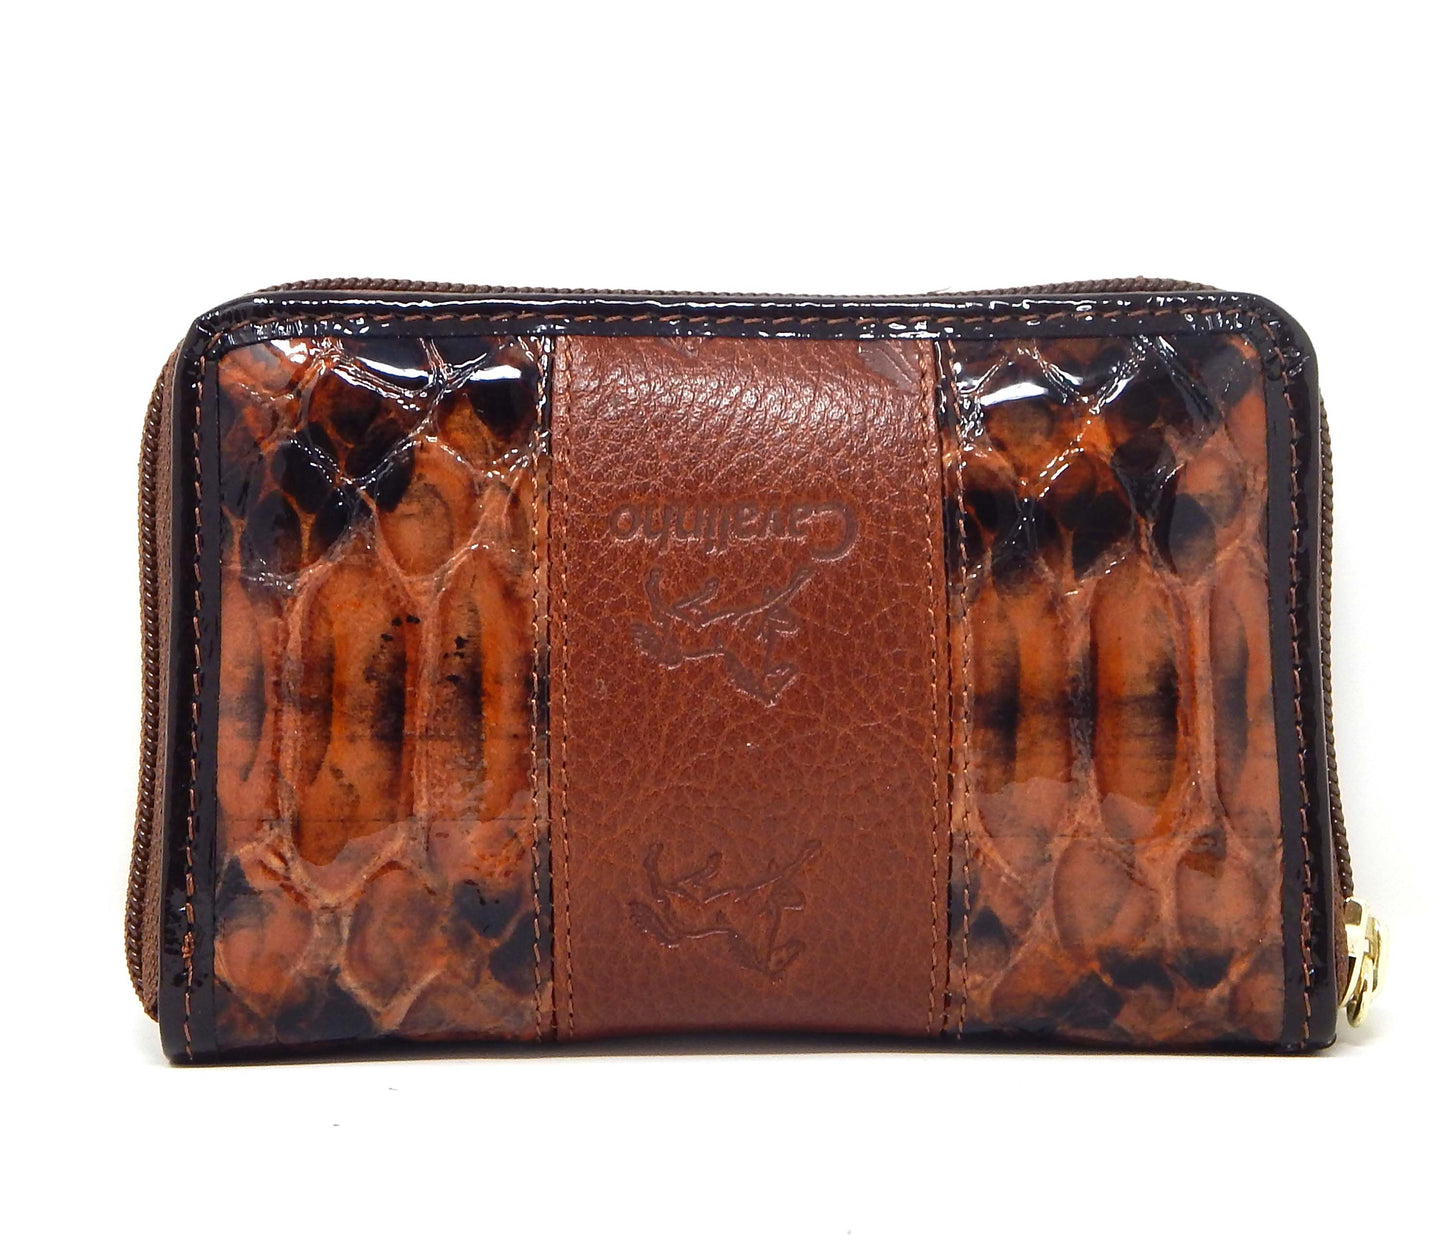 Cavalinho Honor Leather Card Holder Wallet - SaddleBrown - 28190217.13.99_3